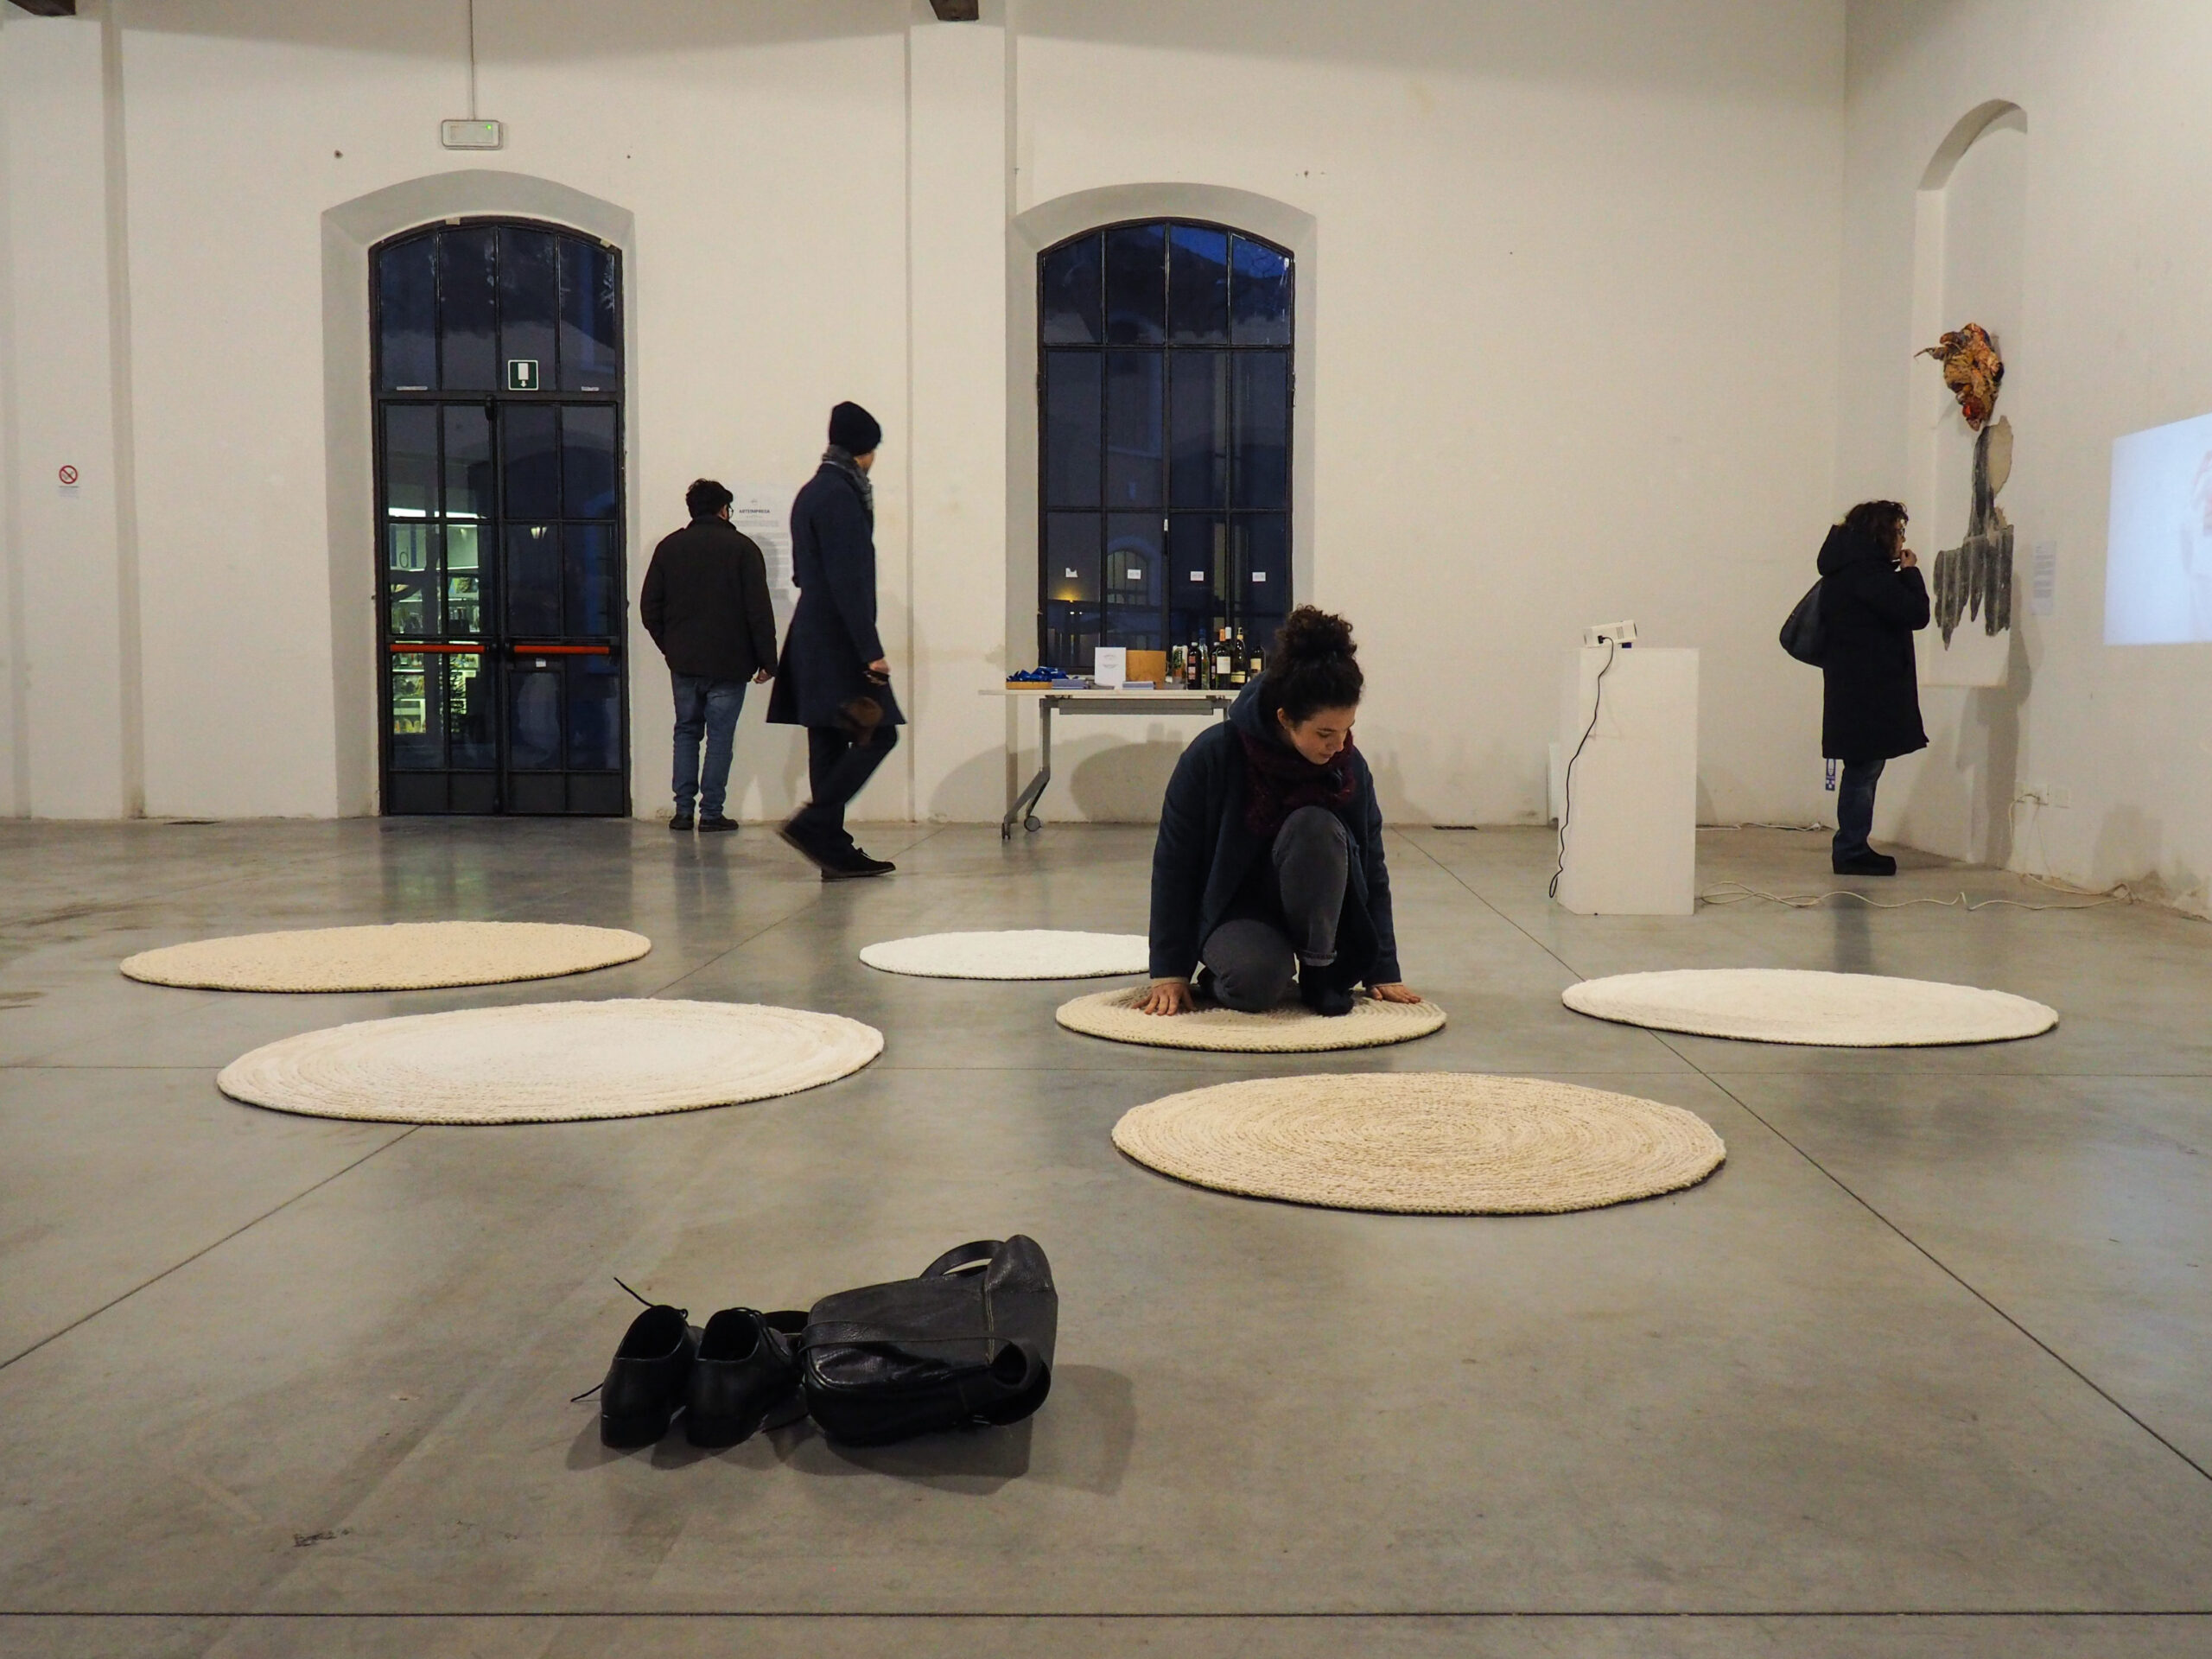 Exhibition view, “Arteimpresa”, curated by Erica Romano and Silvia Bellotti, Sala Campolmi, Museo del Tessuto, Prato, 2020